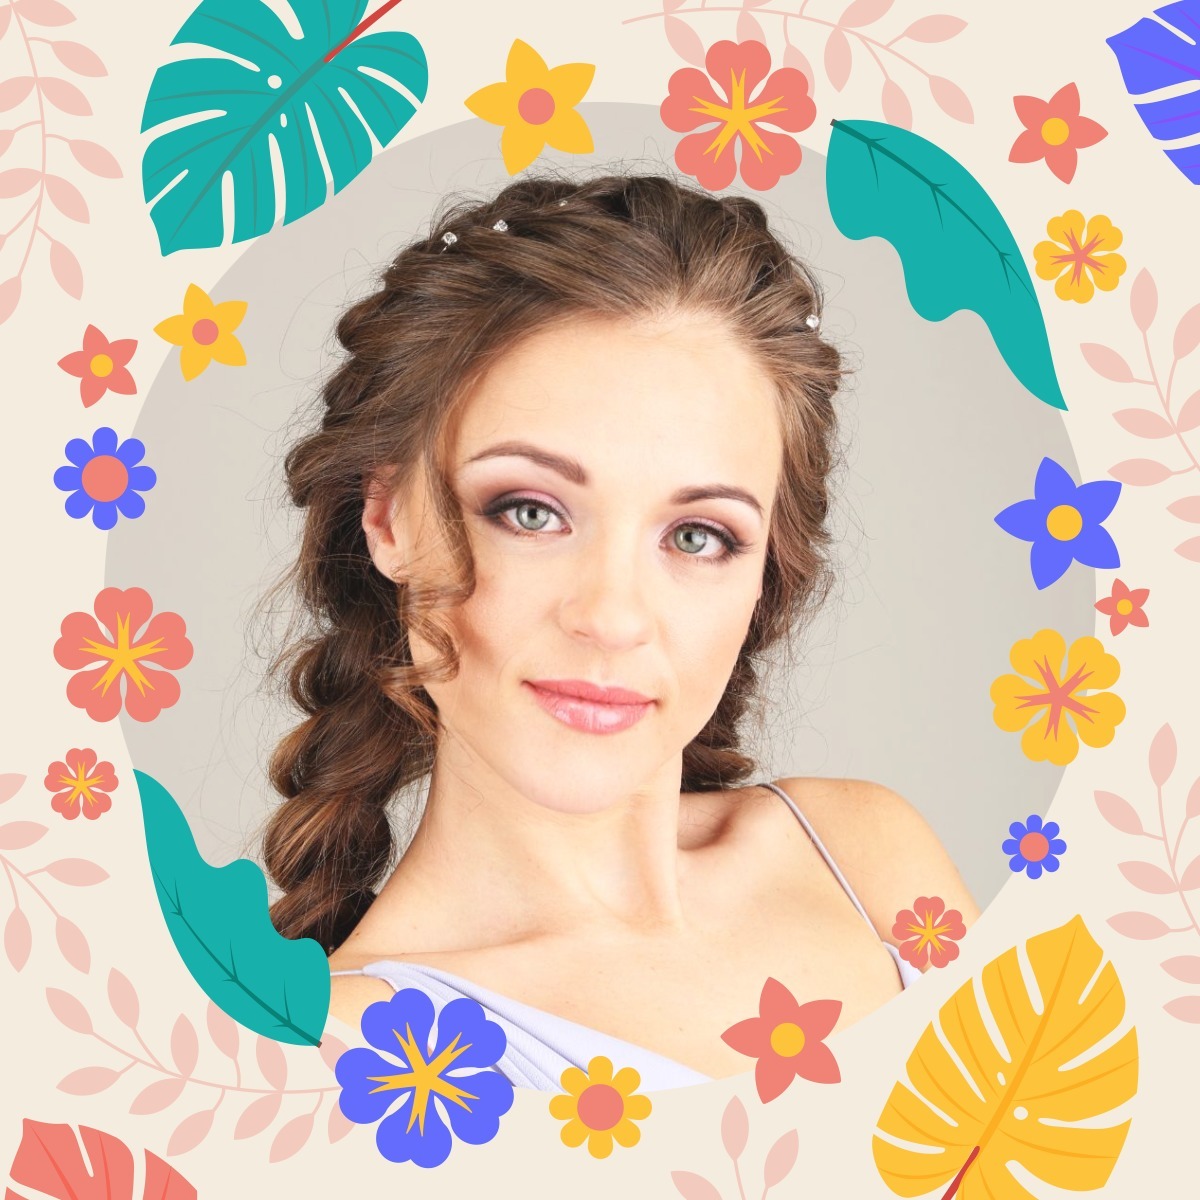 Blomster profilbillede Fotomontage